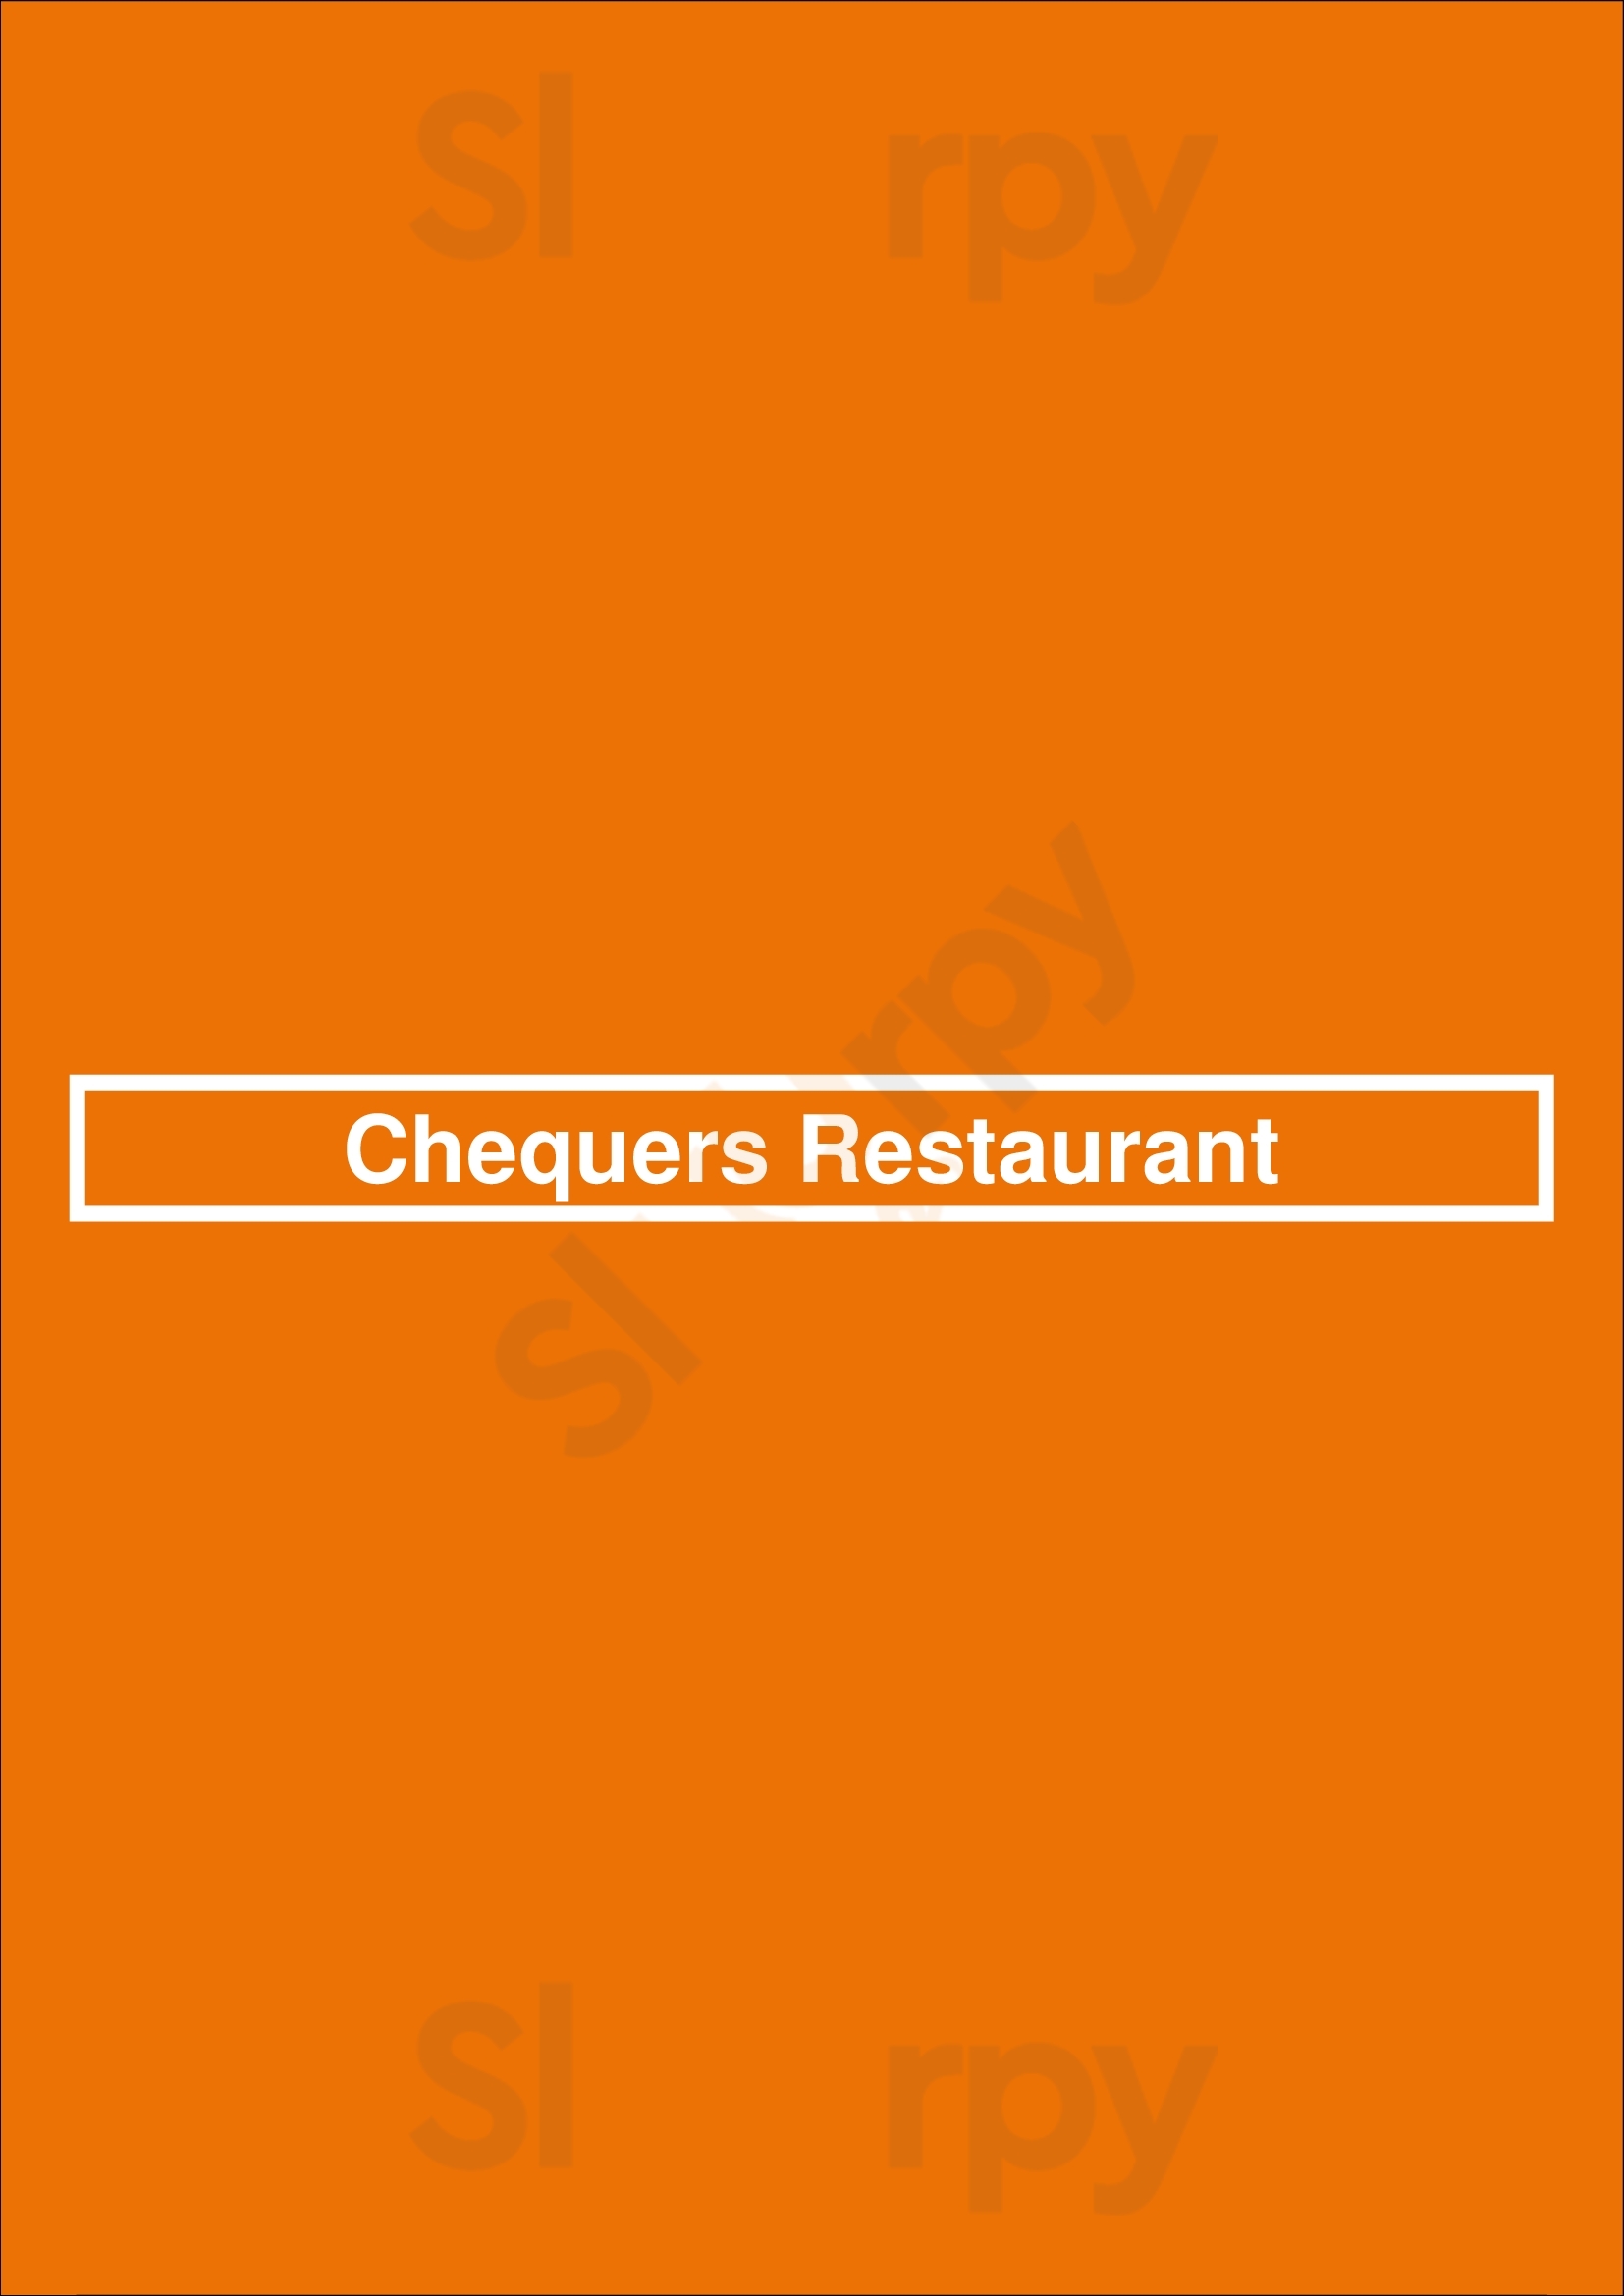 Chequers Restaurant Cascais Menu - 1